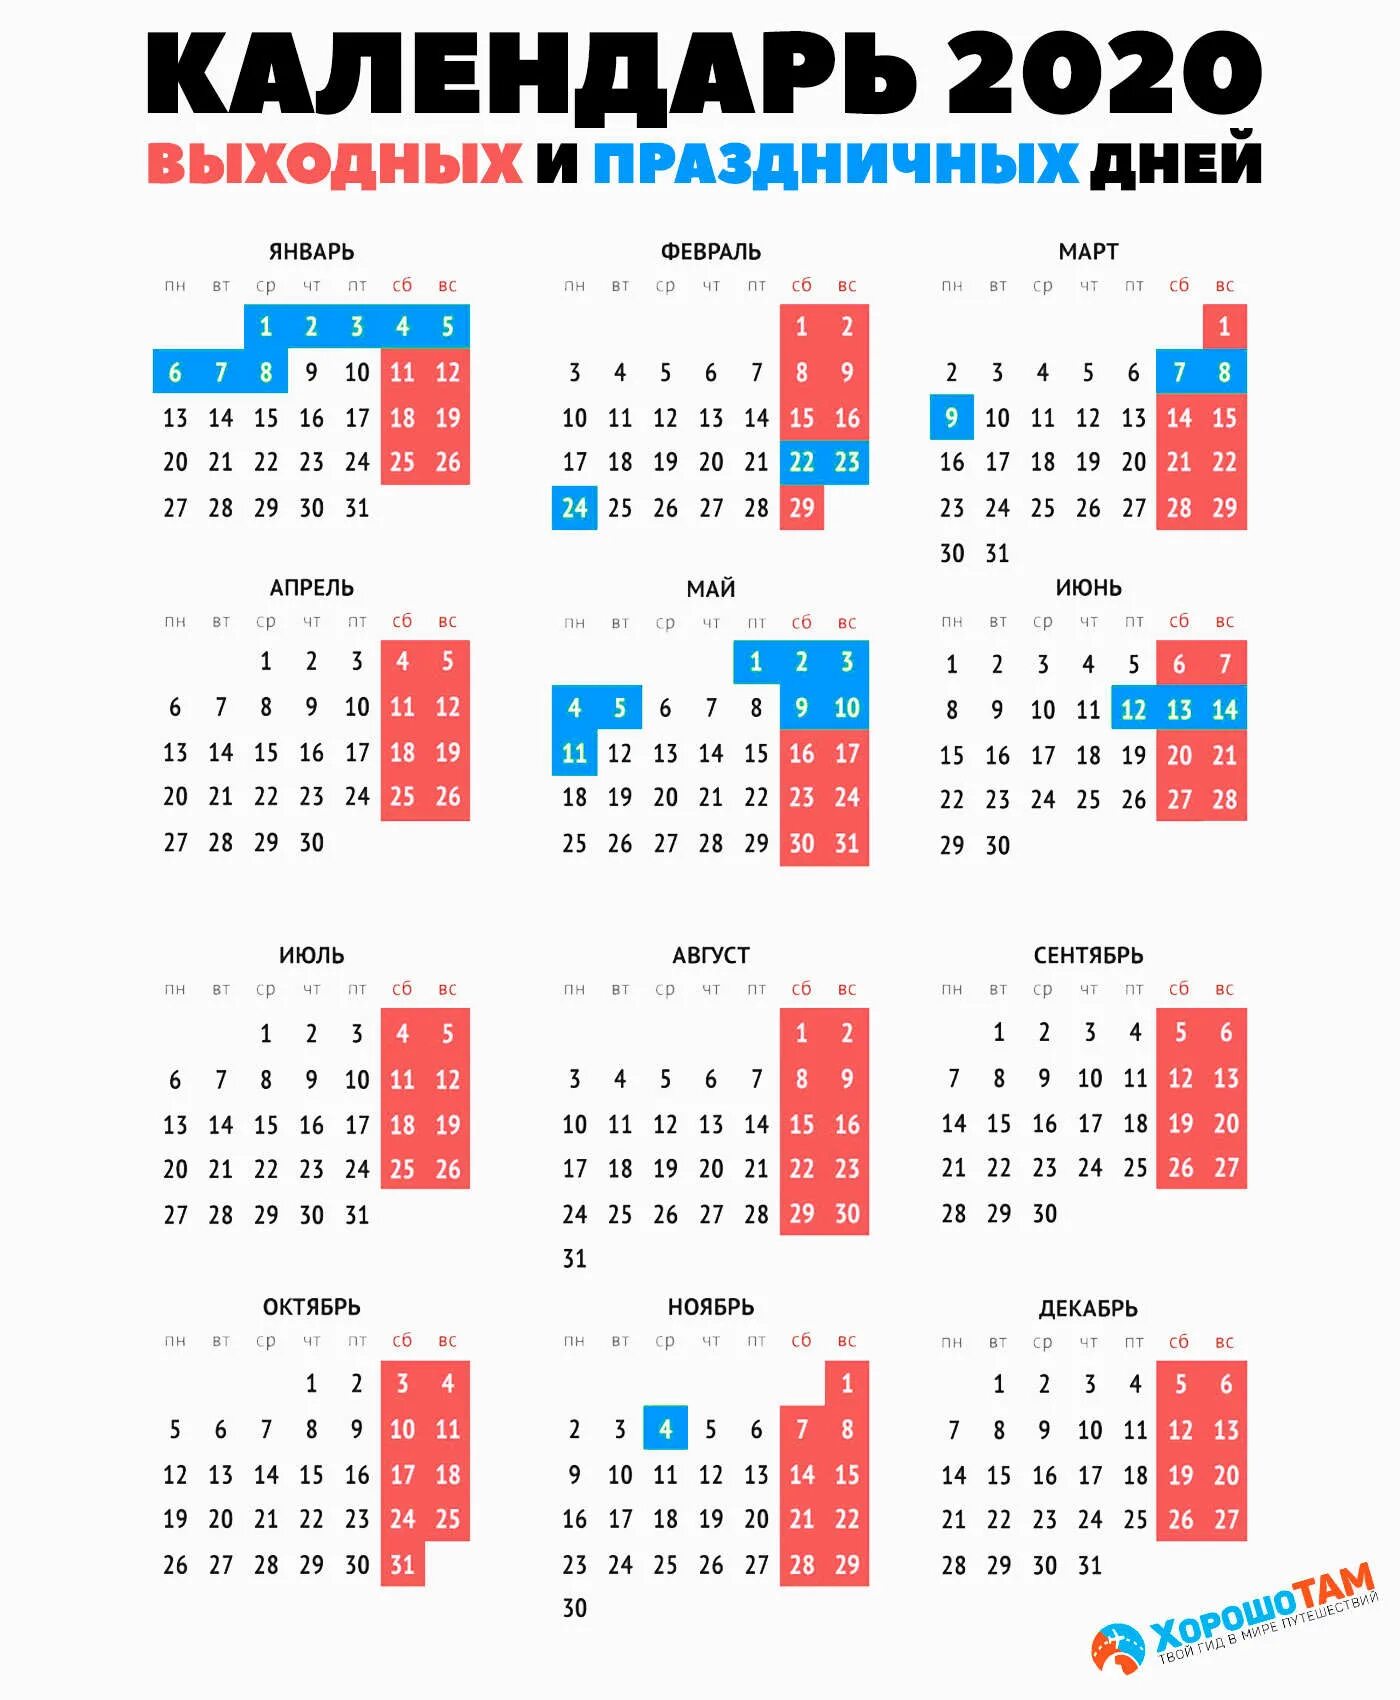 Производственный календарь выходные и праздничные дни. Праздничные дни в 2020 году в России календарь. Календарь 2020г.по месяцам с праздничными и выходными днями. Календарь 2020 года с праздничными днями и выходными. Выходные и нерабочие праздничные дни в 2020 году.